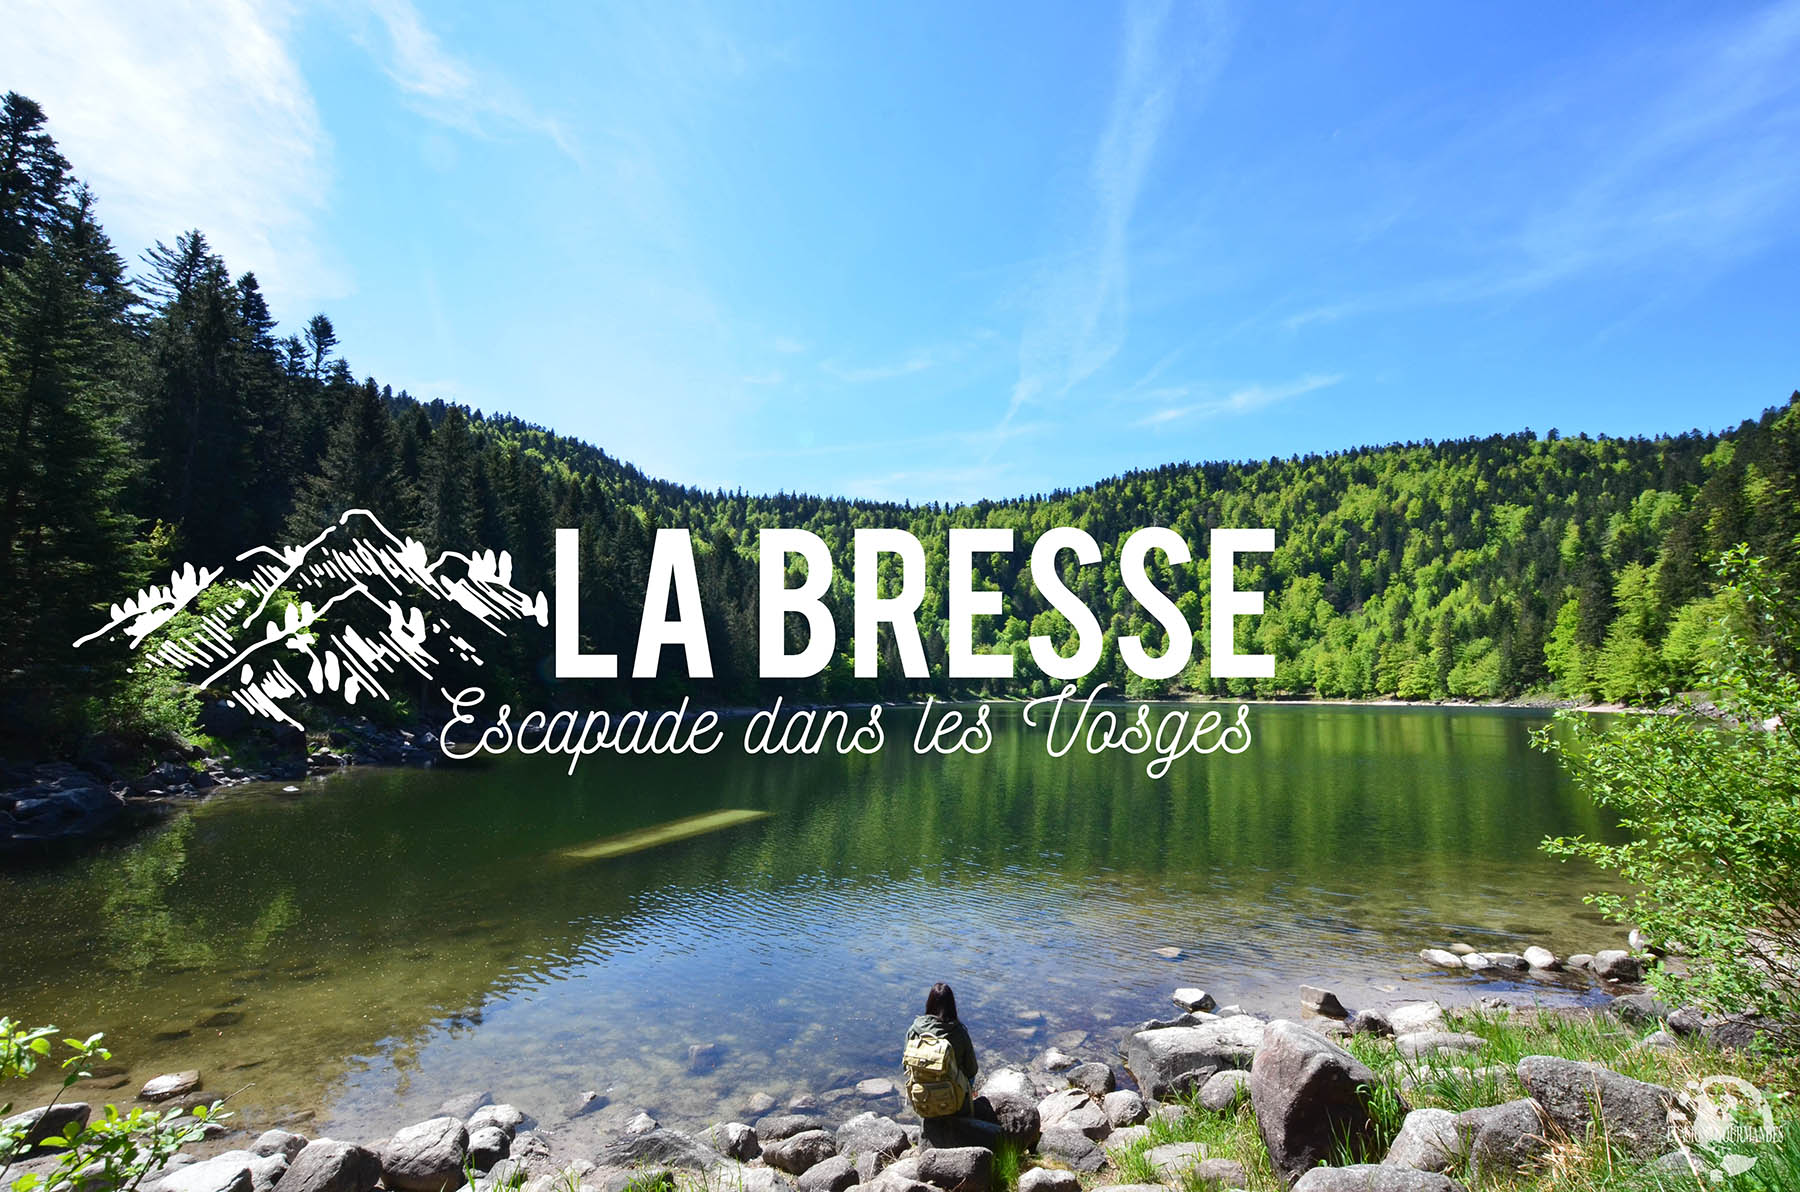 La Bresse